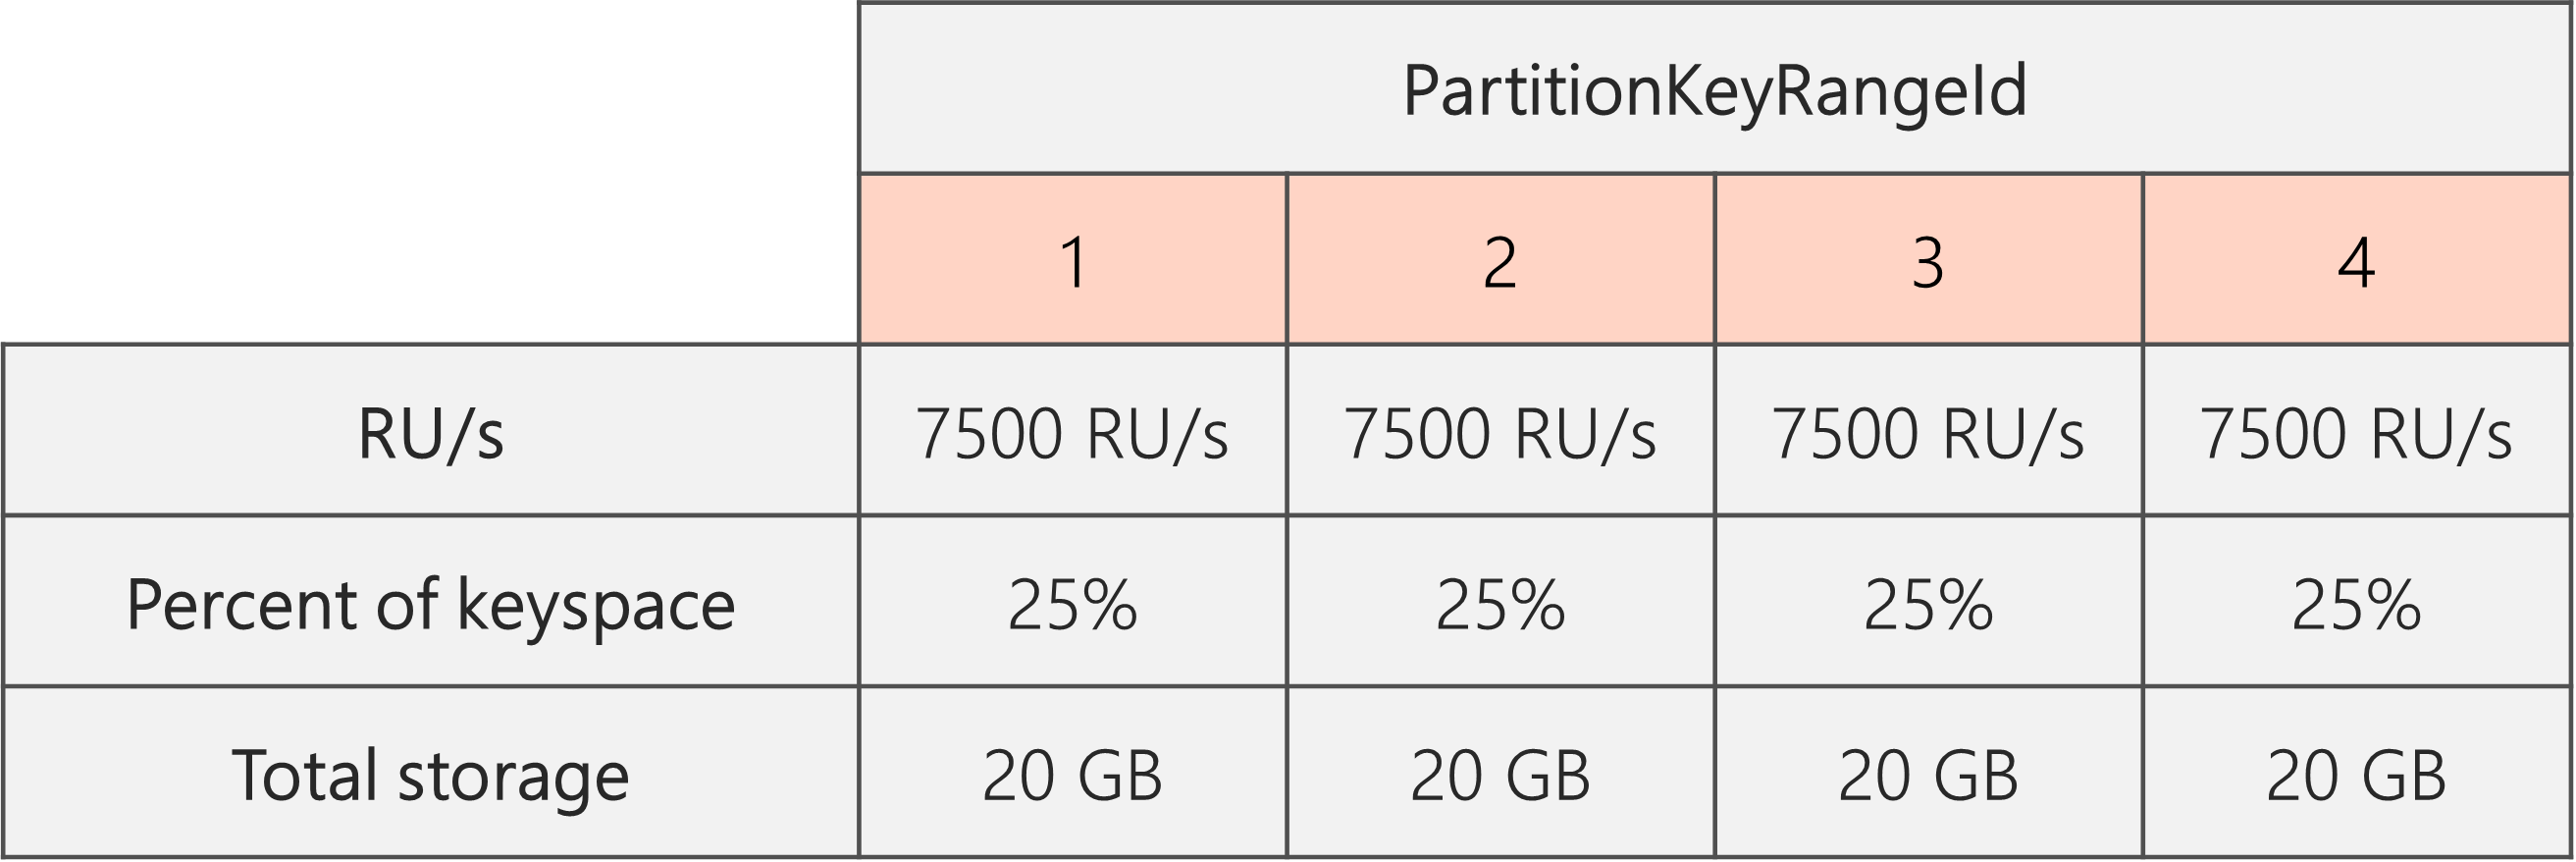 Une fois le fractionnement opéré et le nombre de RU/s réduit de 40 000 à 30 000, nous obtenons 4 PartitionKeyRangeIds avec chacun 7 500 RU/s et 25 % (20 Go) de l’espace de clés total